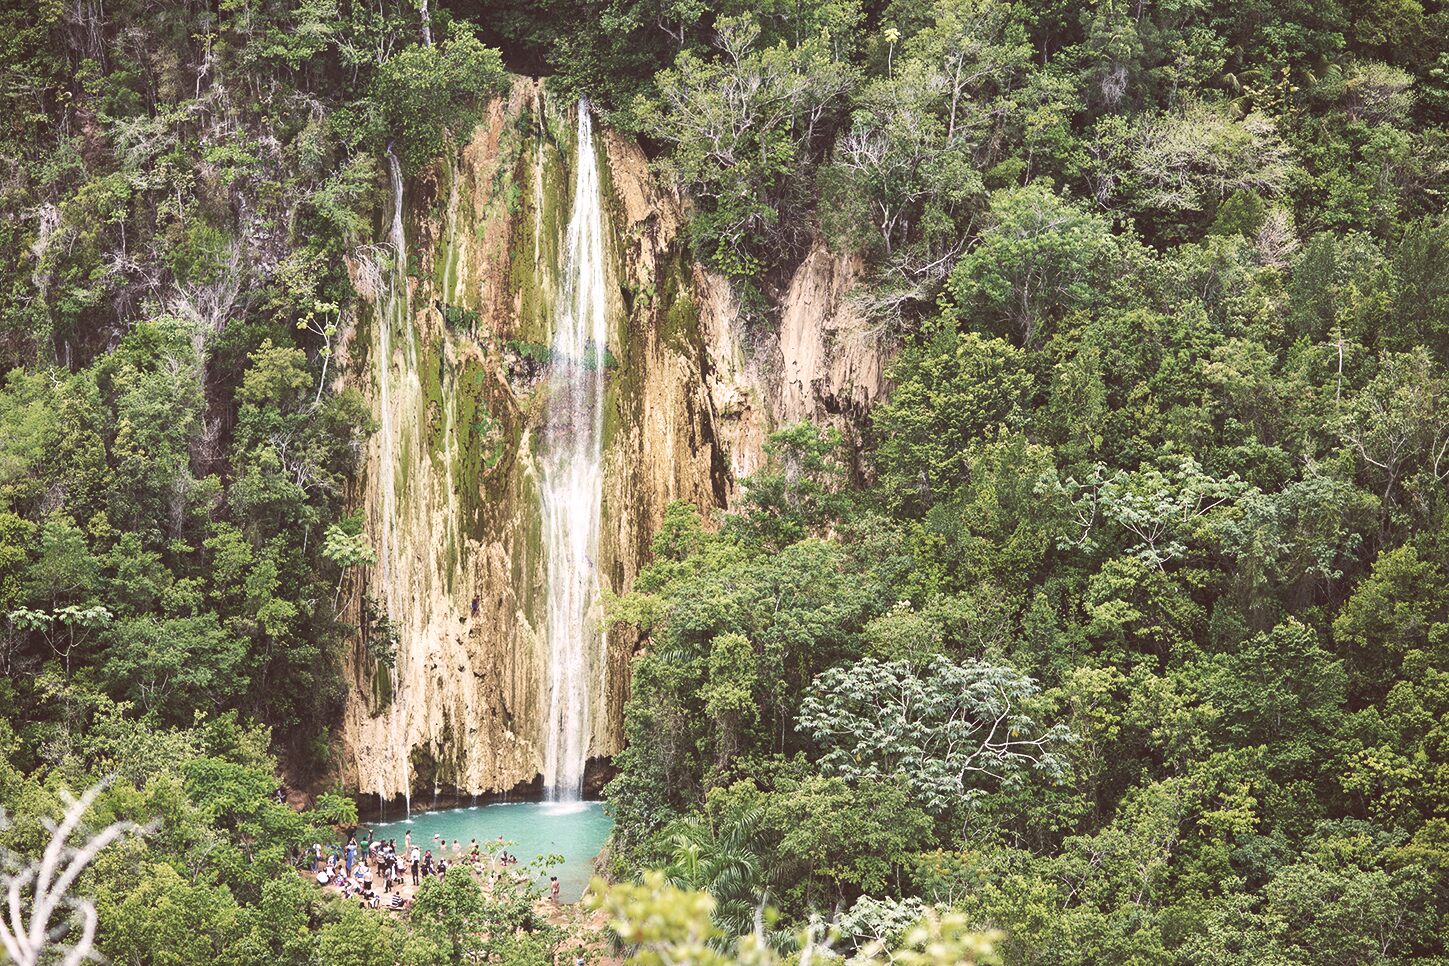 Круглый год на водопаде Эль Лимон масса желающих окунуться и разбогатеть